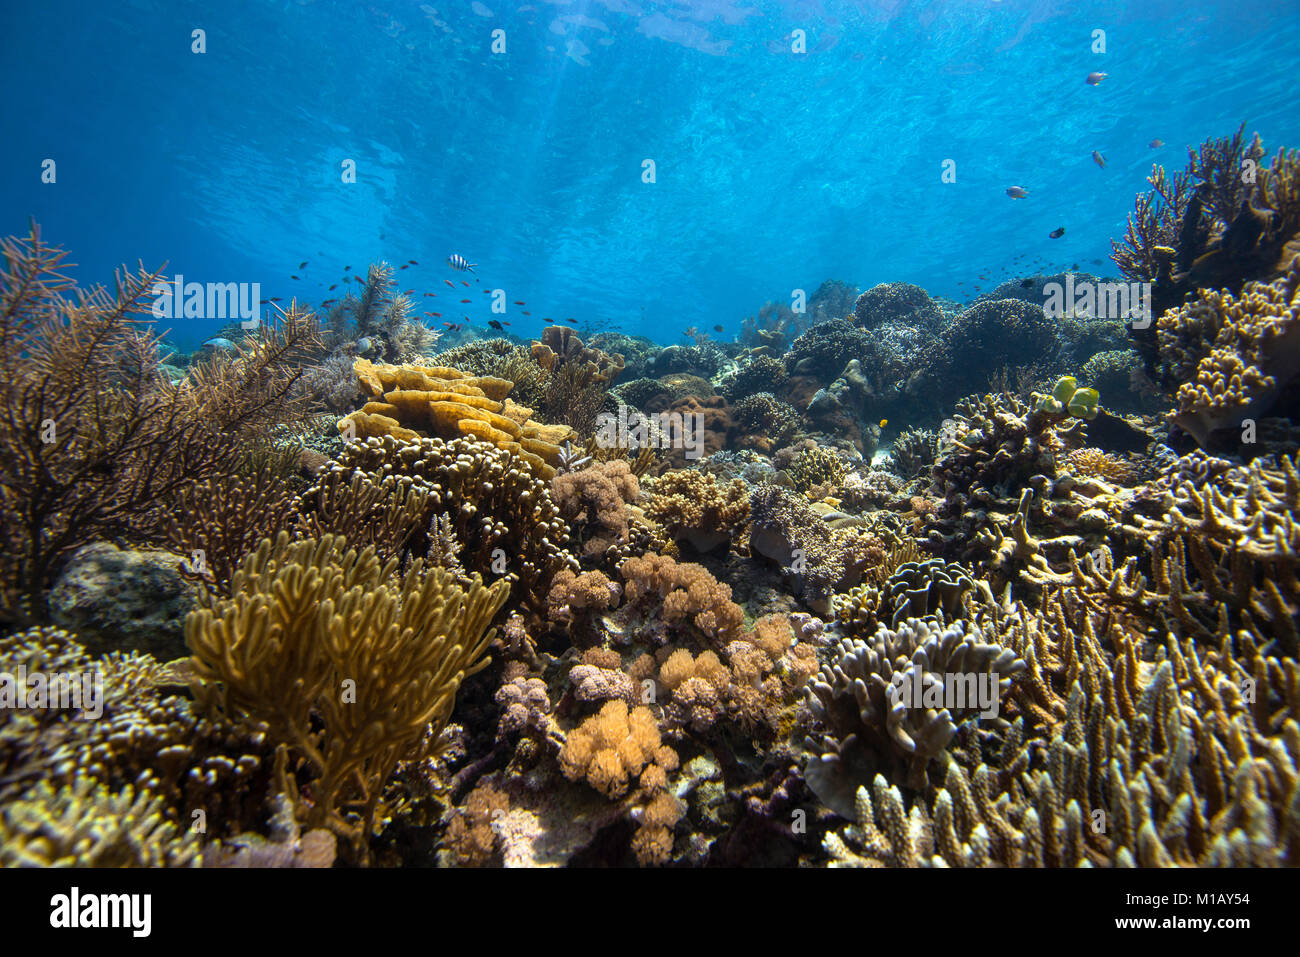 Paysages authentiques et magnifiques jardin de corail dans les eaux peu profondes, de l'eau tropicale, avec beaucoup de coraux durs et mous, et certains poissons de récif, dans le Parc National de Komodo, Indonésie Banque D'Images